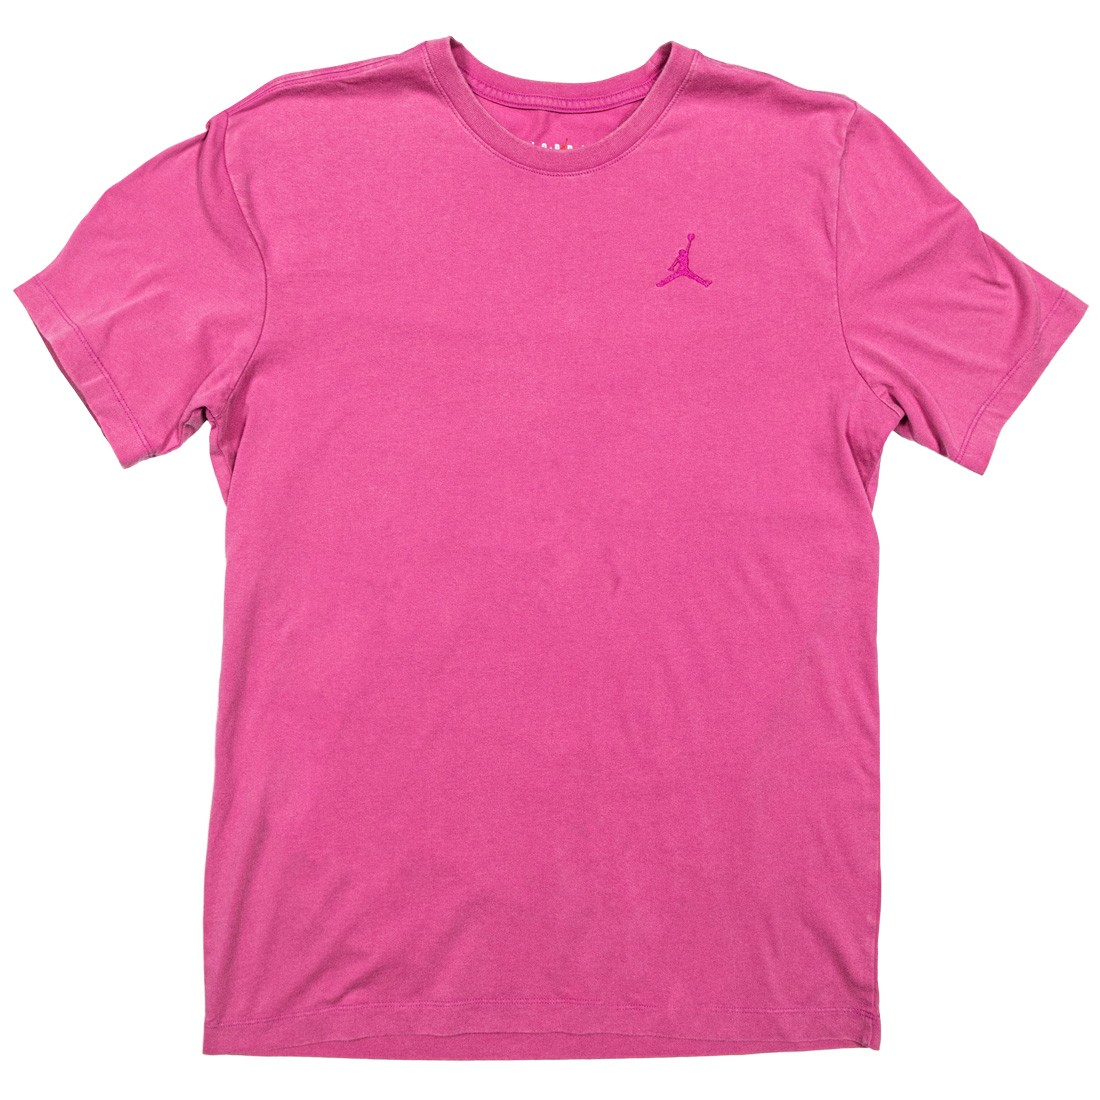 Buy Fuschia Jordan Shirt | UP TO 54% OFF